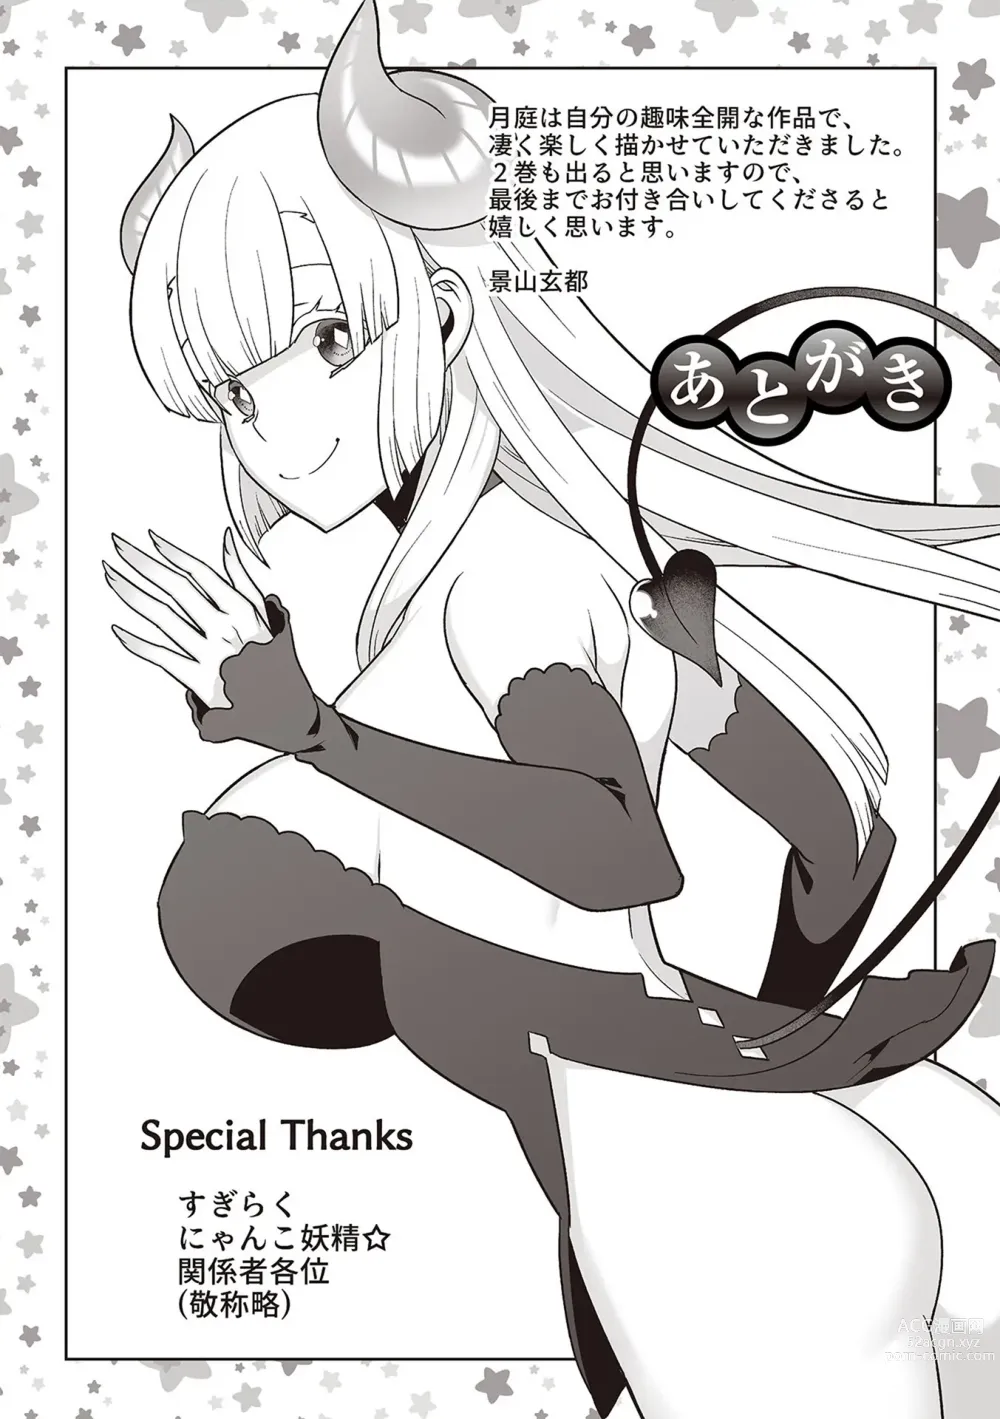 Page 213 of manga Tsukitei no Seijo Inmitsu no Utage 1